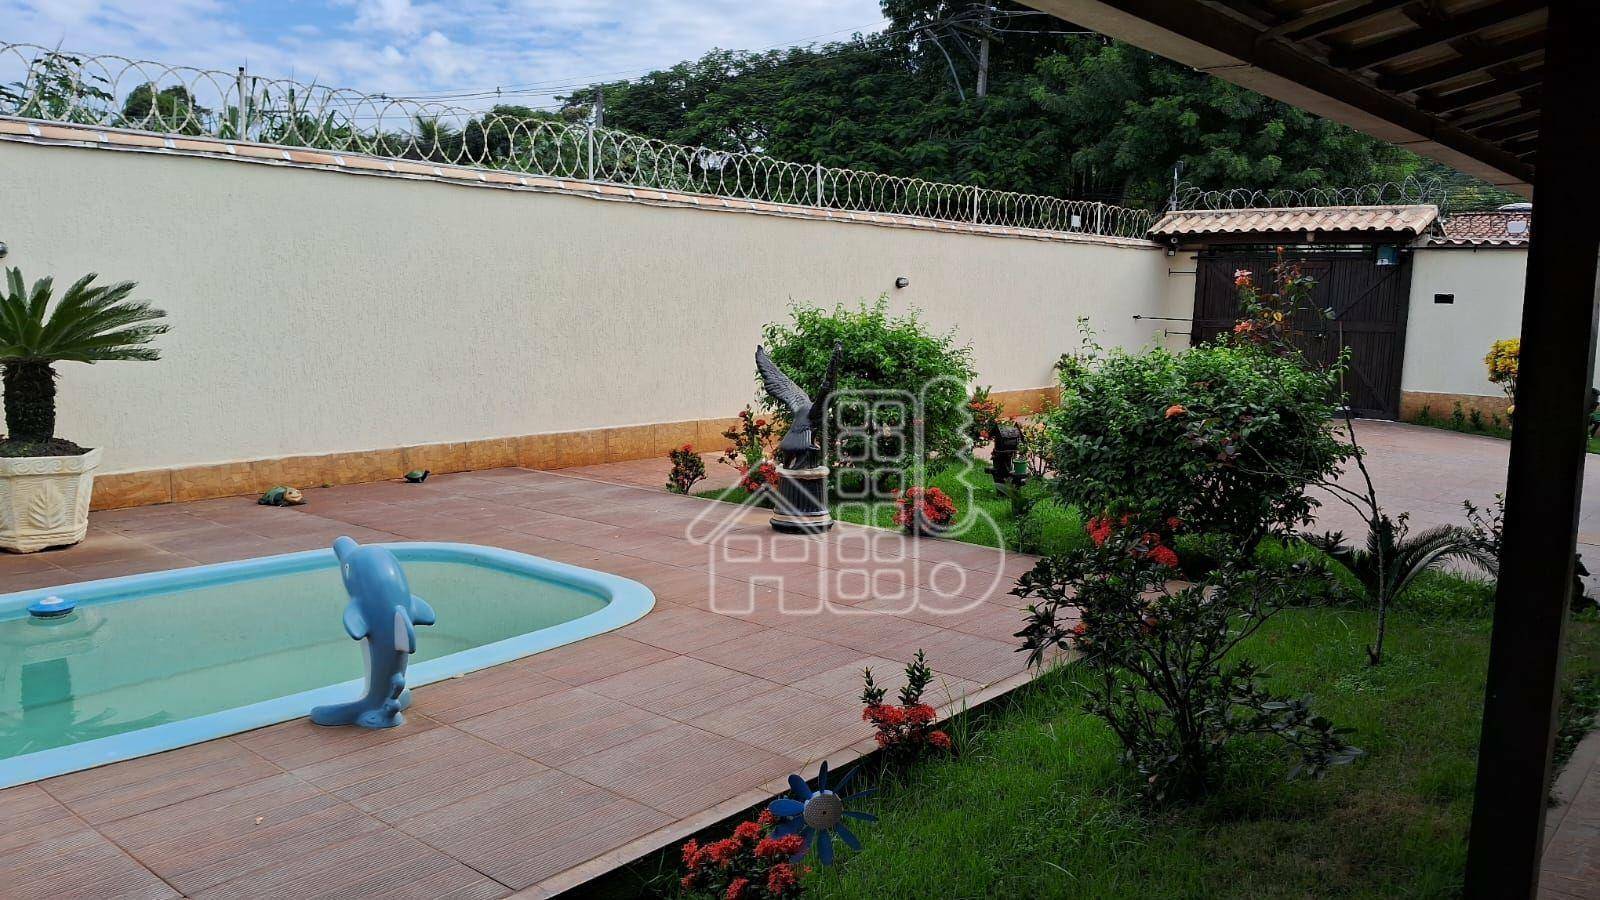 Casa com 2 dormitórios à venda, 110 m² por R$ 650.000,00 - Recanto de Itaipuaçu - Maricá/RJ